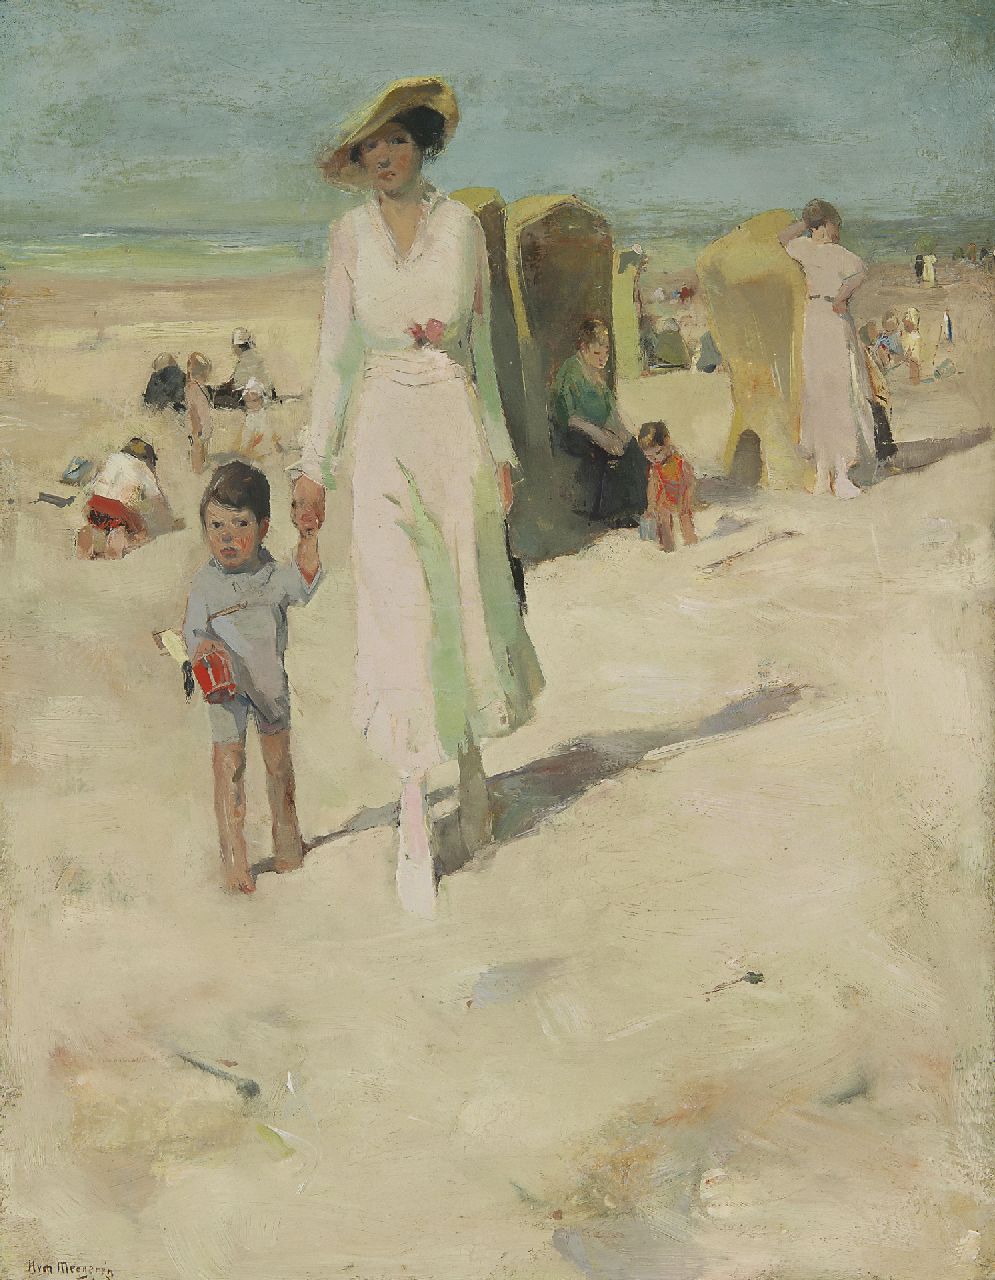 Meegeren H.A. van | Henricus Antonius 'Han' van Meegeren, A mother and child on the beach, oil on canvas 73.4 x 57.3 cm, signed l.l.